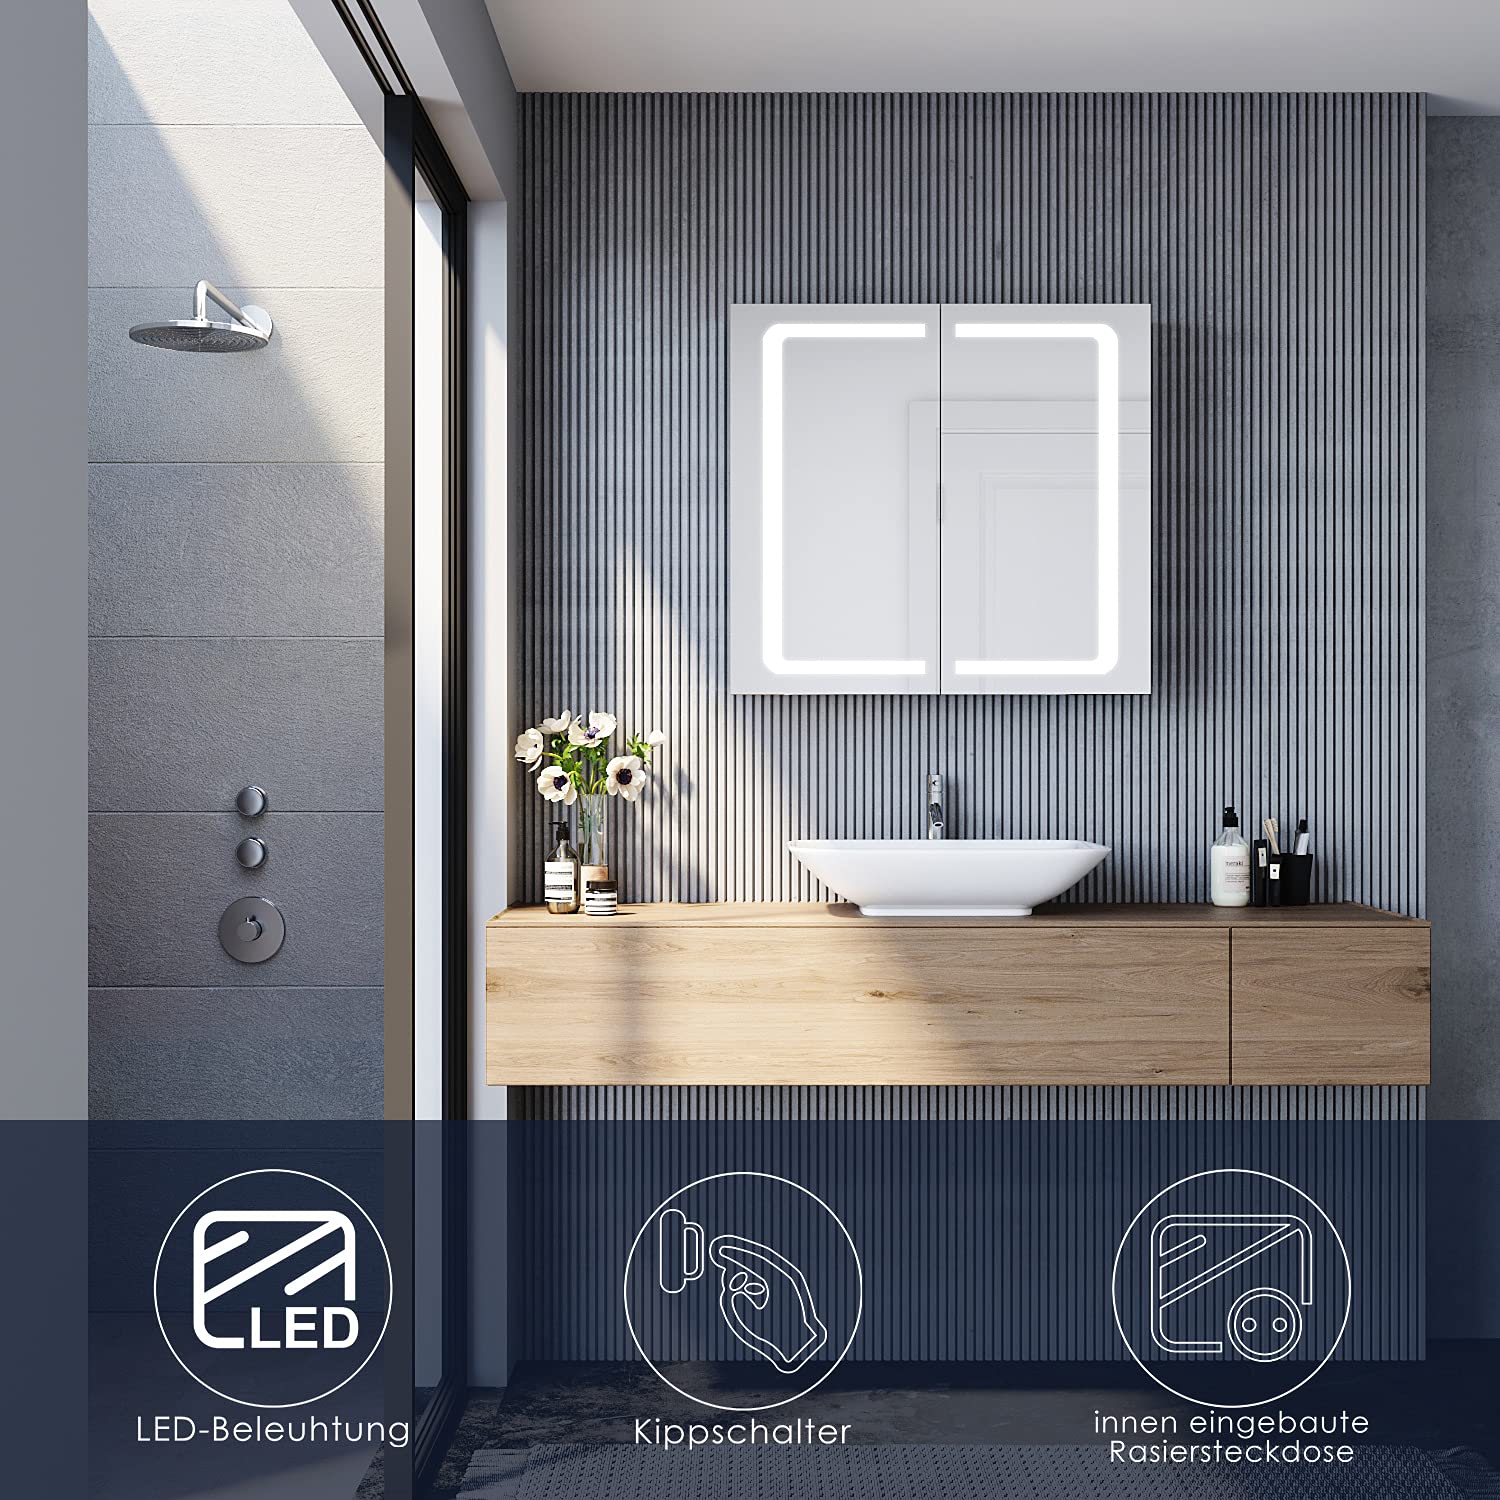 SONNI 70x65 cm Edelstahl LED Spiegelschrank mit Beleuchtung, Steckdose und Kippschalter fürs Badezimmer.